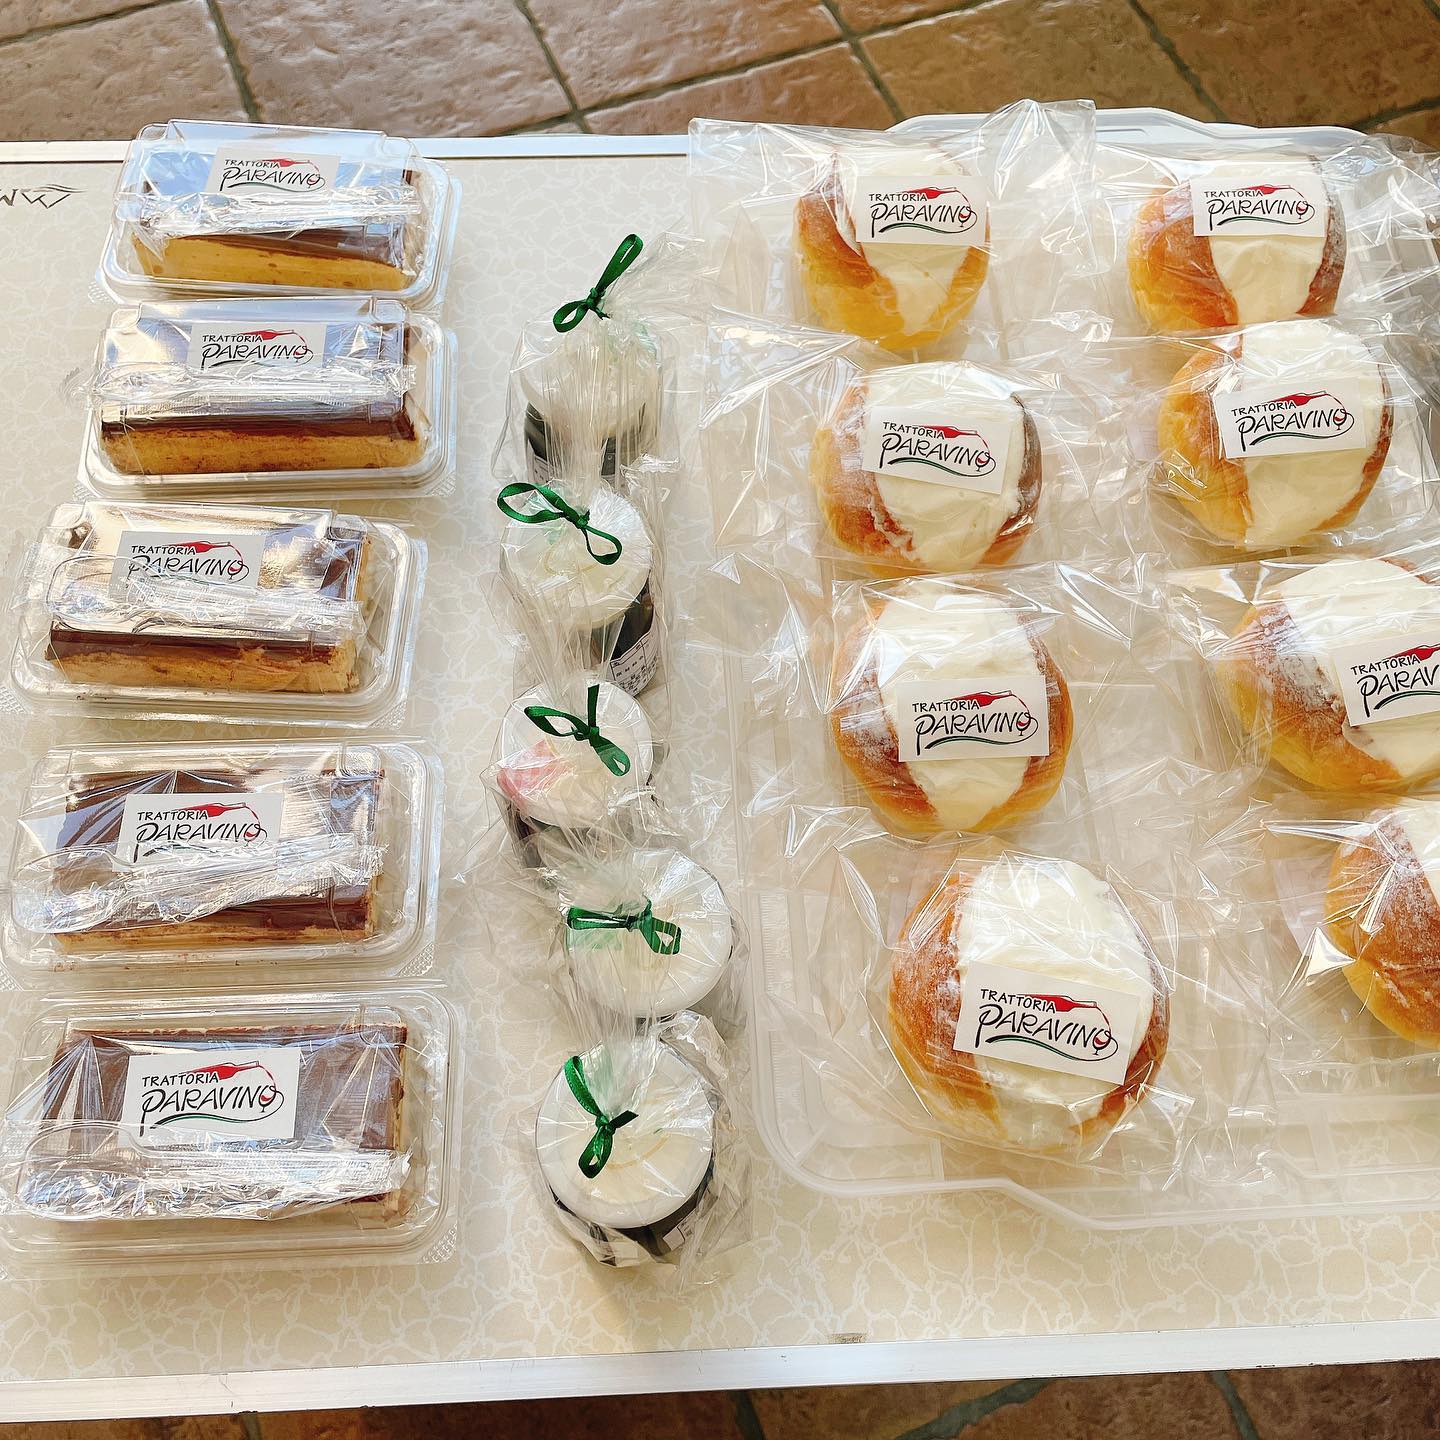 明日18日〜太田市役所のスイーツ自販機( @sweets_vendor )がイオンモール太田でも販売開始します️

パラヴィーノの出品は、市役所と同じ #マリトッツォ、 #ティラミス、 #エスプレッソコーヒーゼリー　の3点+自家製ドレッシング2種類(サンロードトマトとハラペーニョ)
となってます

太田の色々なお店のお菓子やドレッシングが買えますので、イオンに行った際にはぜひ立ち寄ってみてください

============================
イタリアンおせちご予約受付中です。
群馬gotoeat使えます。
℡ 0276-55-5886 
DM @trattoria_paravino
============================
使えます
#カウンター席　あります
美味しいグラスワインあります
#肉の盛り合わせ　 手打ちパスタ　ピッツァ
#イタリア料理　
パラヴィーノワインアカウント
@paravino.vino
パラヴィーノテイクアウトアカウント
@paravino.takeout